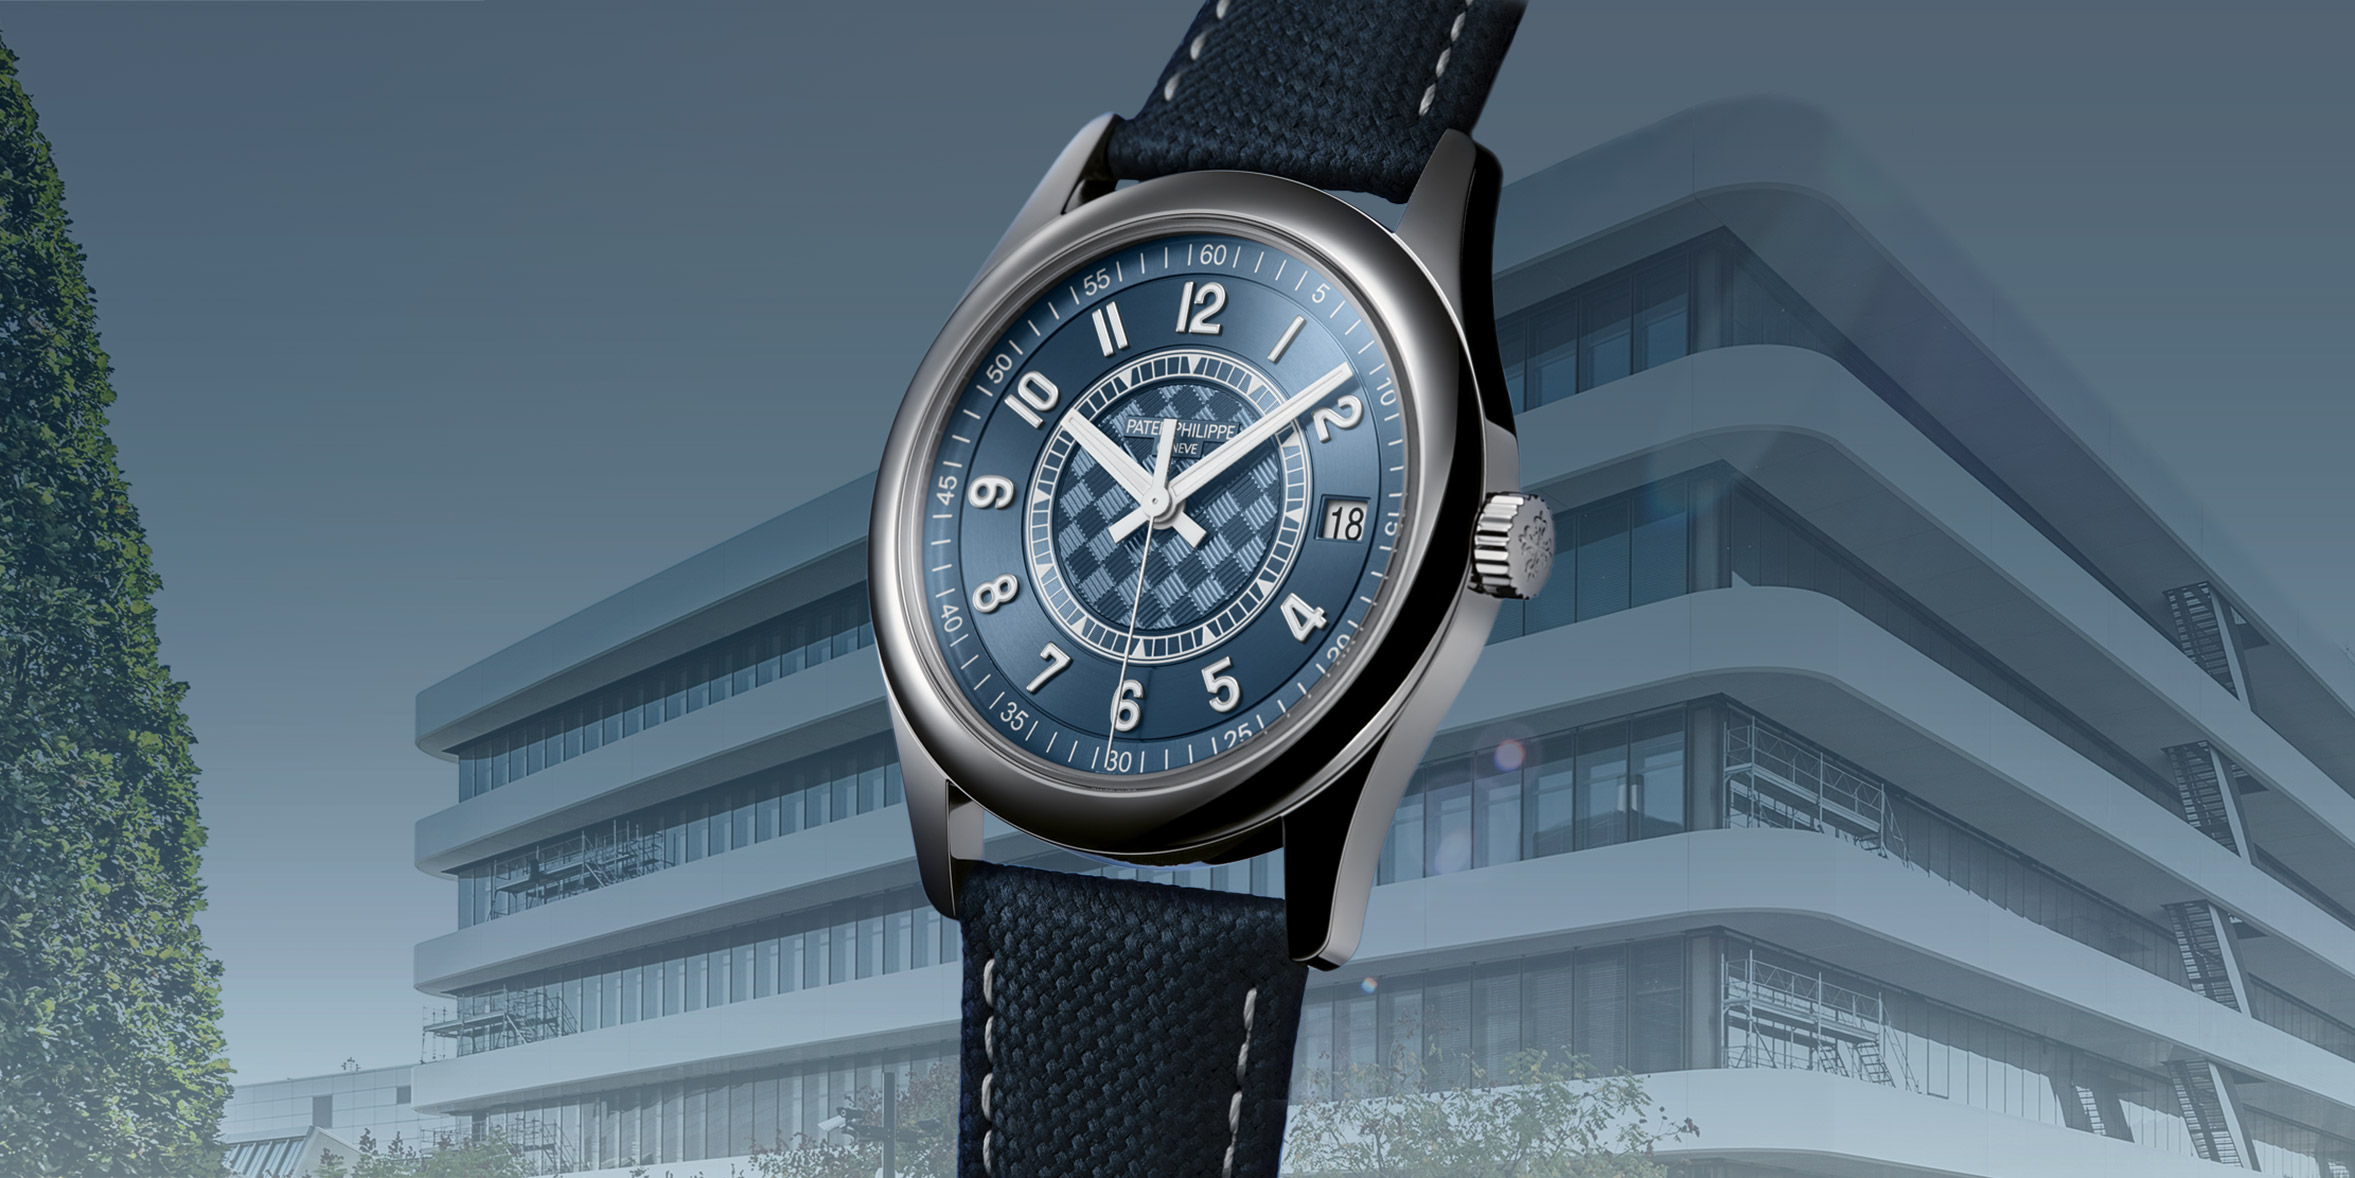 Patek Philippe chi 631 triệu USD mở rộng cơ sở sản xuất, ra mắt đồng hồ mới